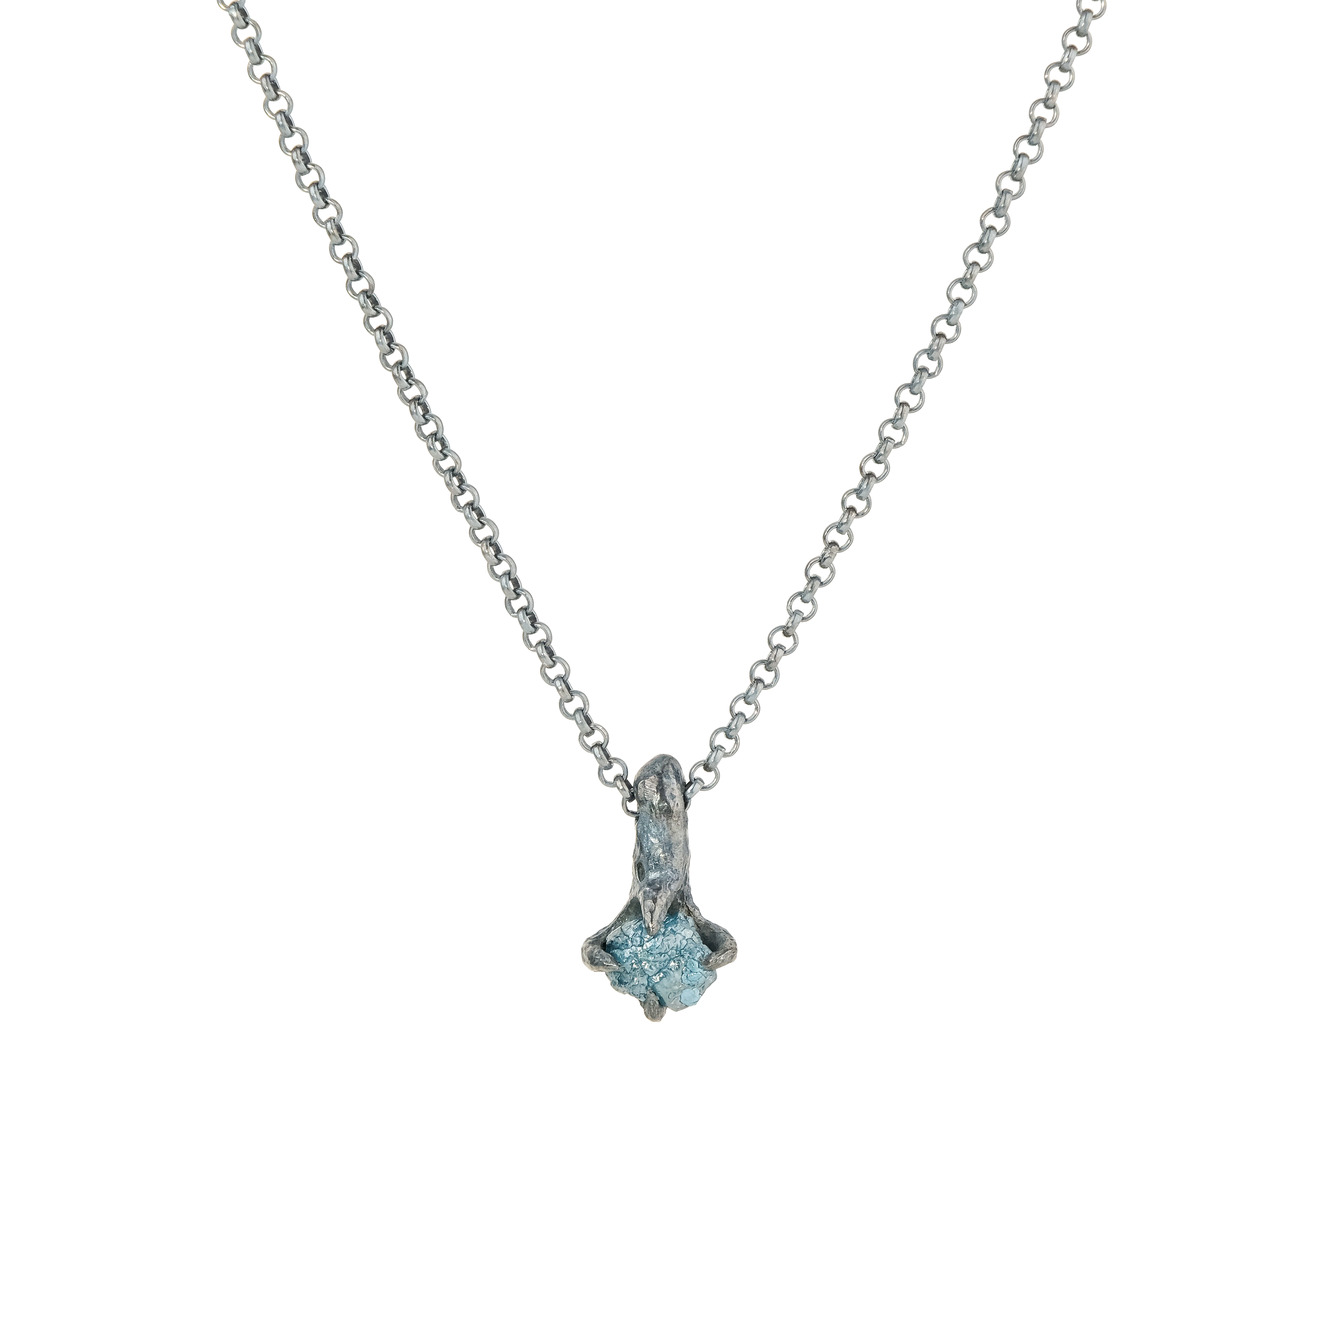 Kintsugi Jewelry Кулон Patience из серебра с кристаллом кварца